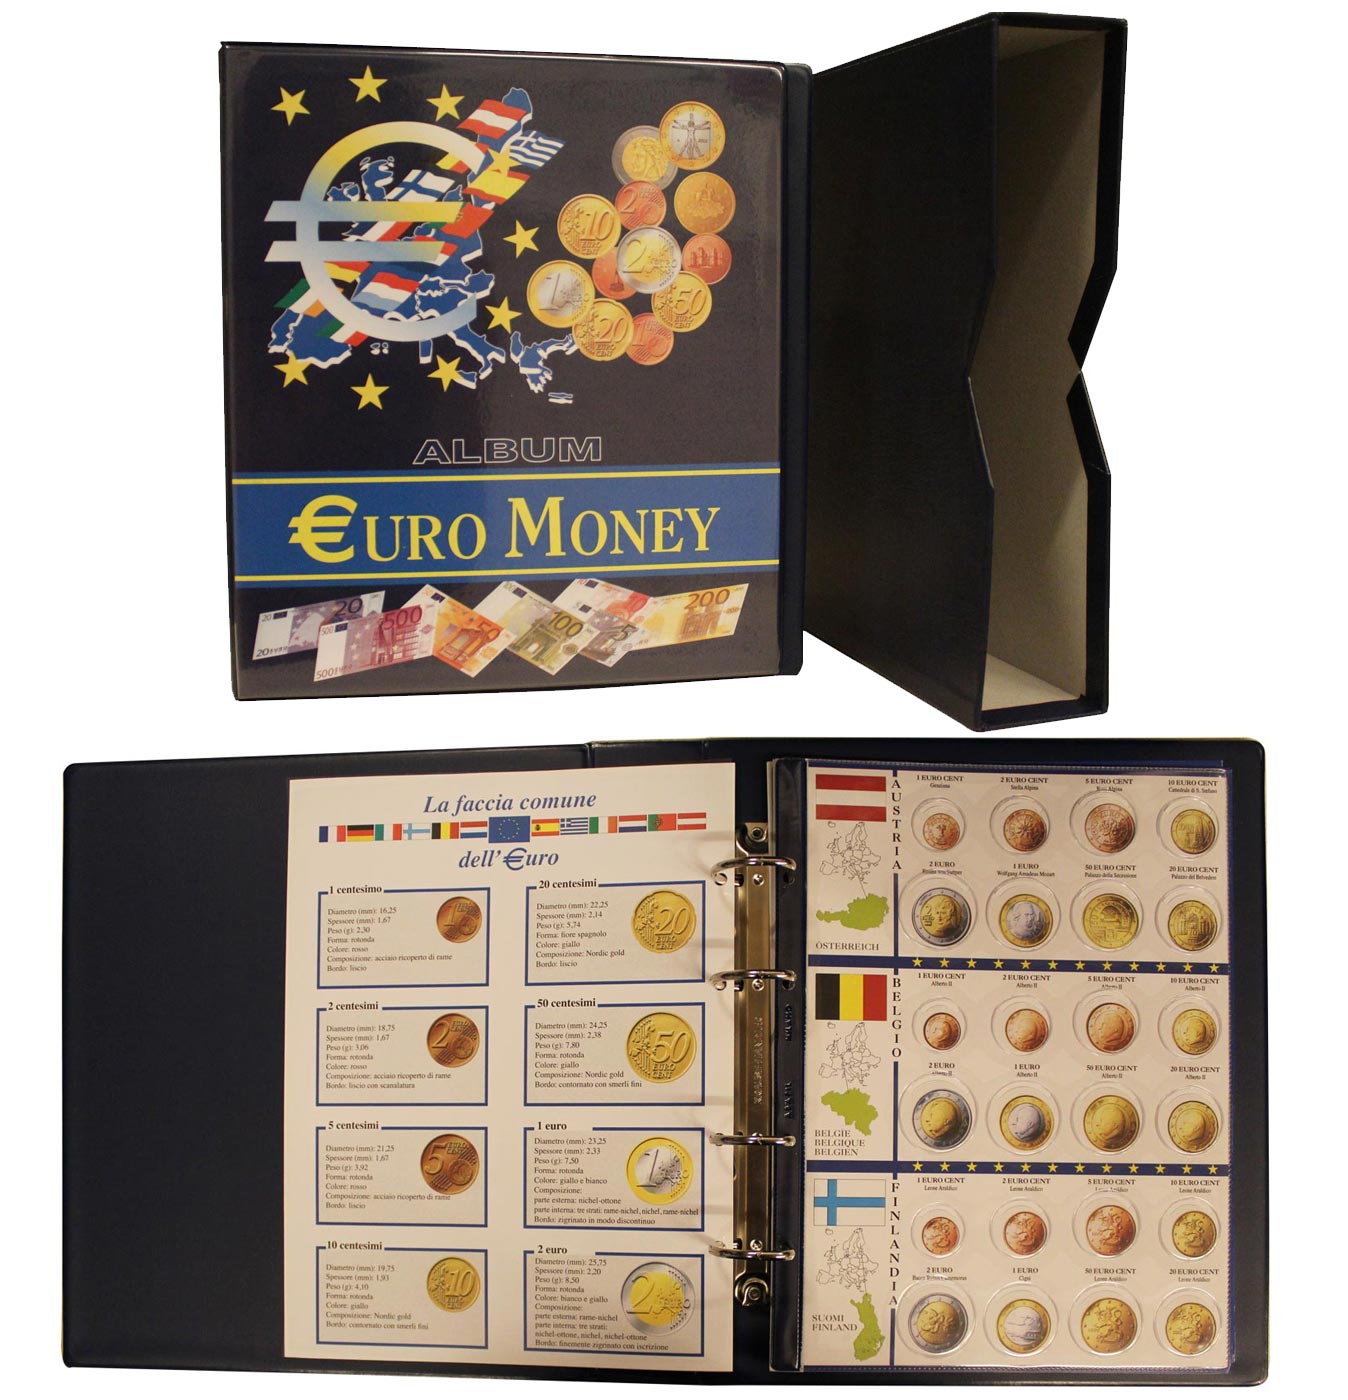 Album Euromoney per la raccolta delle 8 monete tipologiche in euro dei 19 paesi aderenti